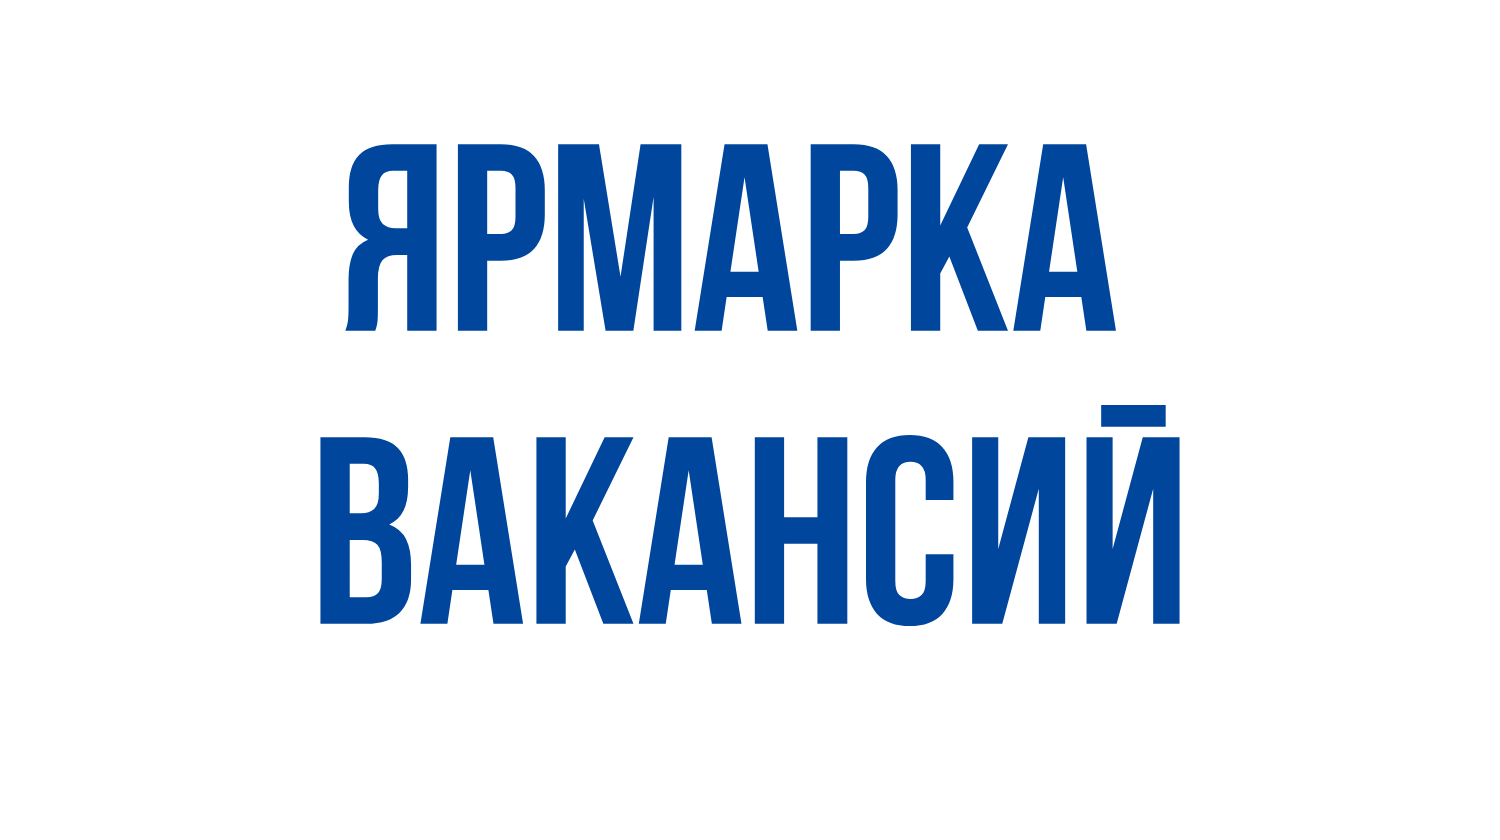 Мини-ярмарки вакансий пройдут 26 и 27 июня на базе Терюхского сельисполкома и Кореневской экспериментальной базы соответственно